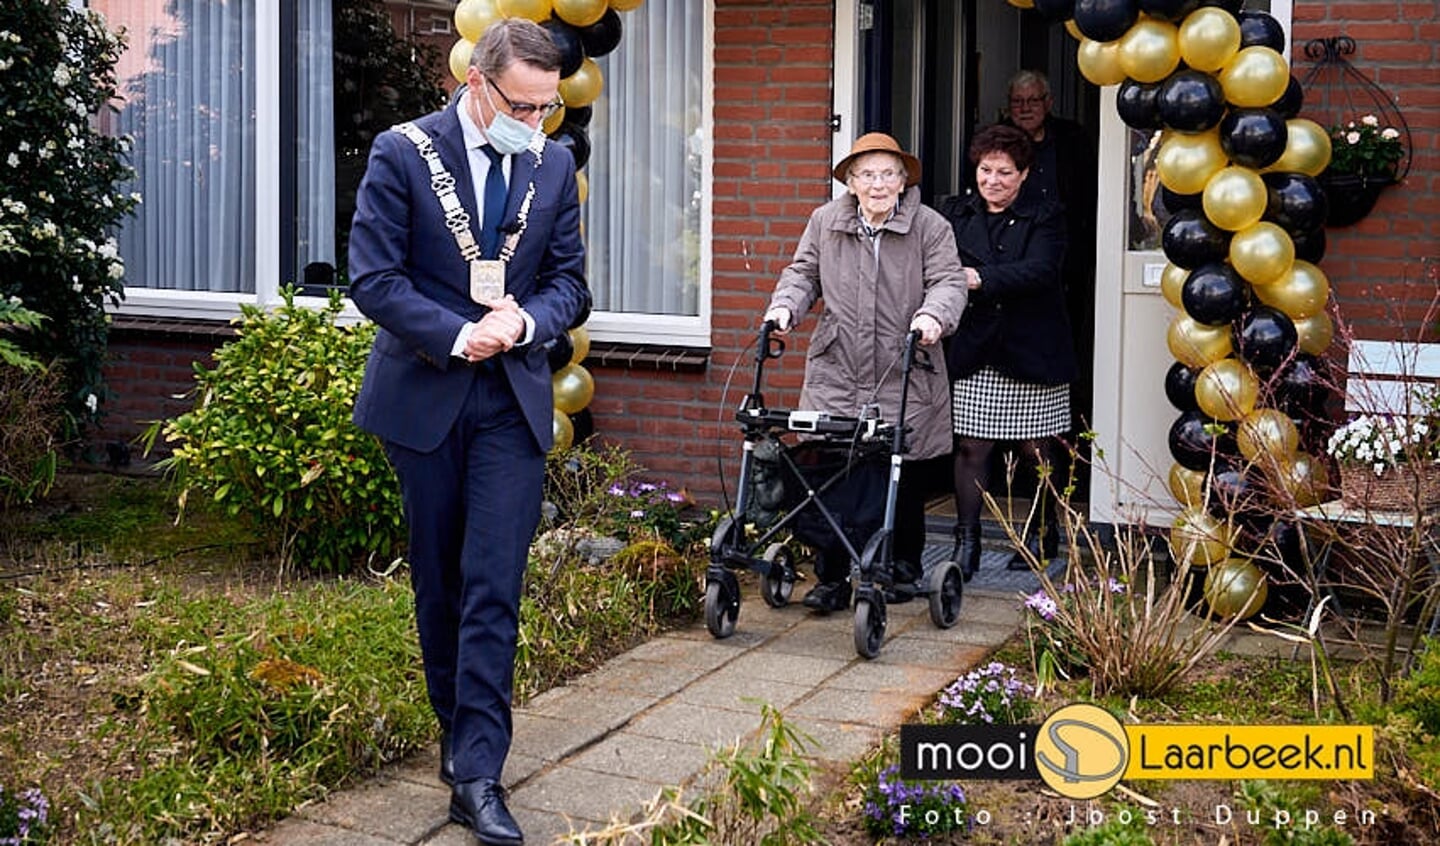 Mevrouw Toos van de Vorst uit Aarle-Rixtel viert zondag haar 100ste verjaardag.